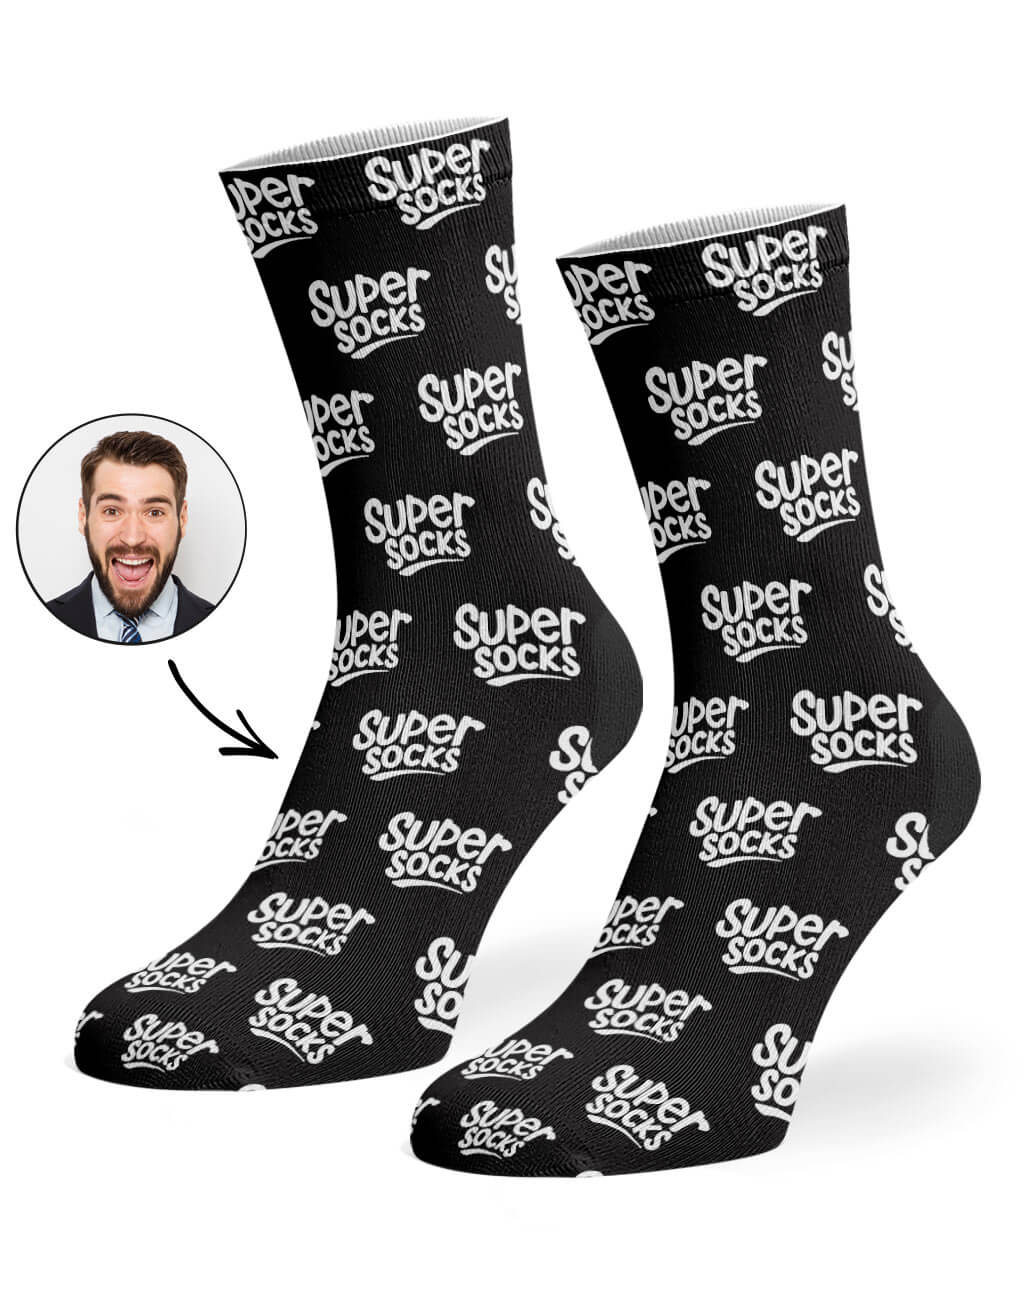 printed sock merchandise